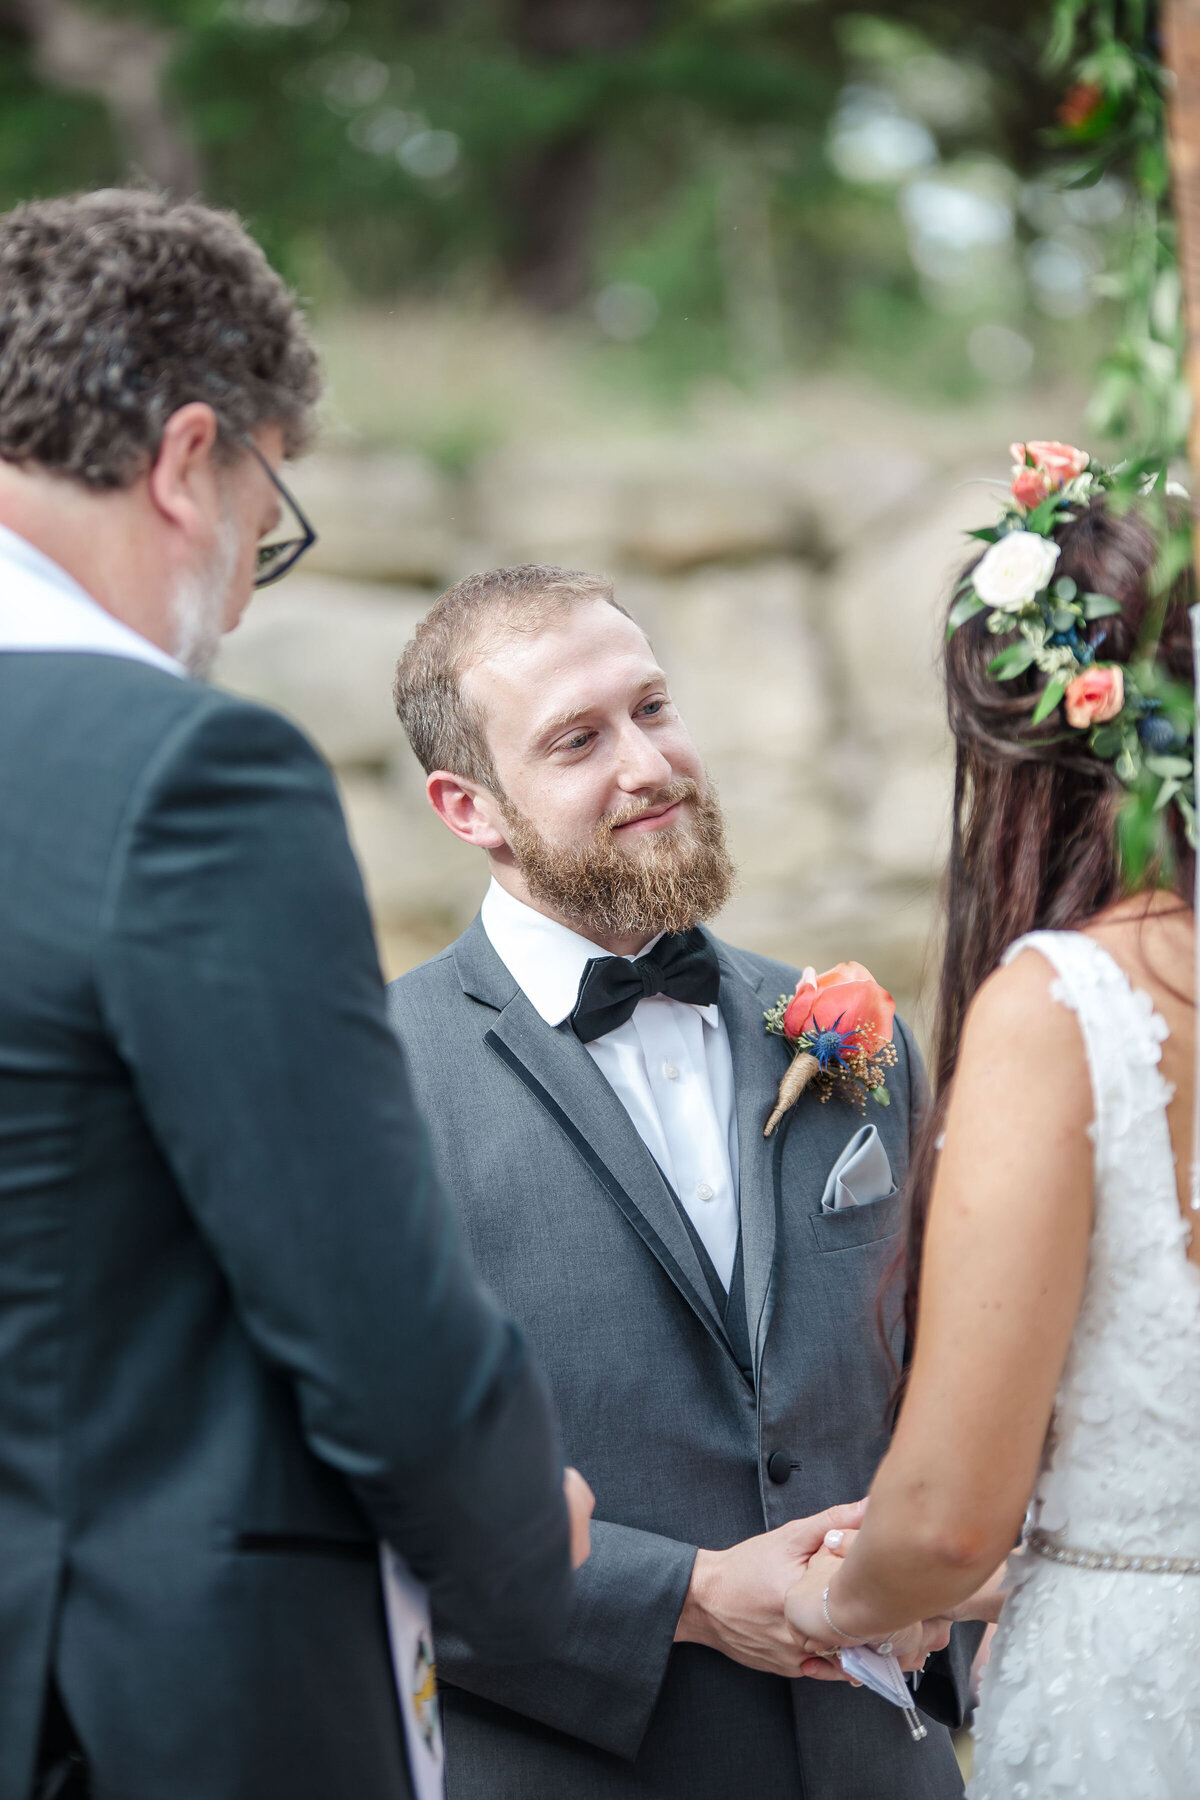 groom gazes at bride wearing flower wreath headpiece